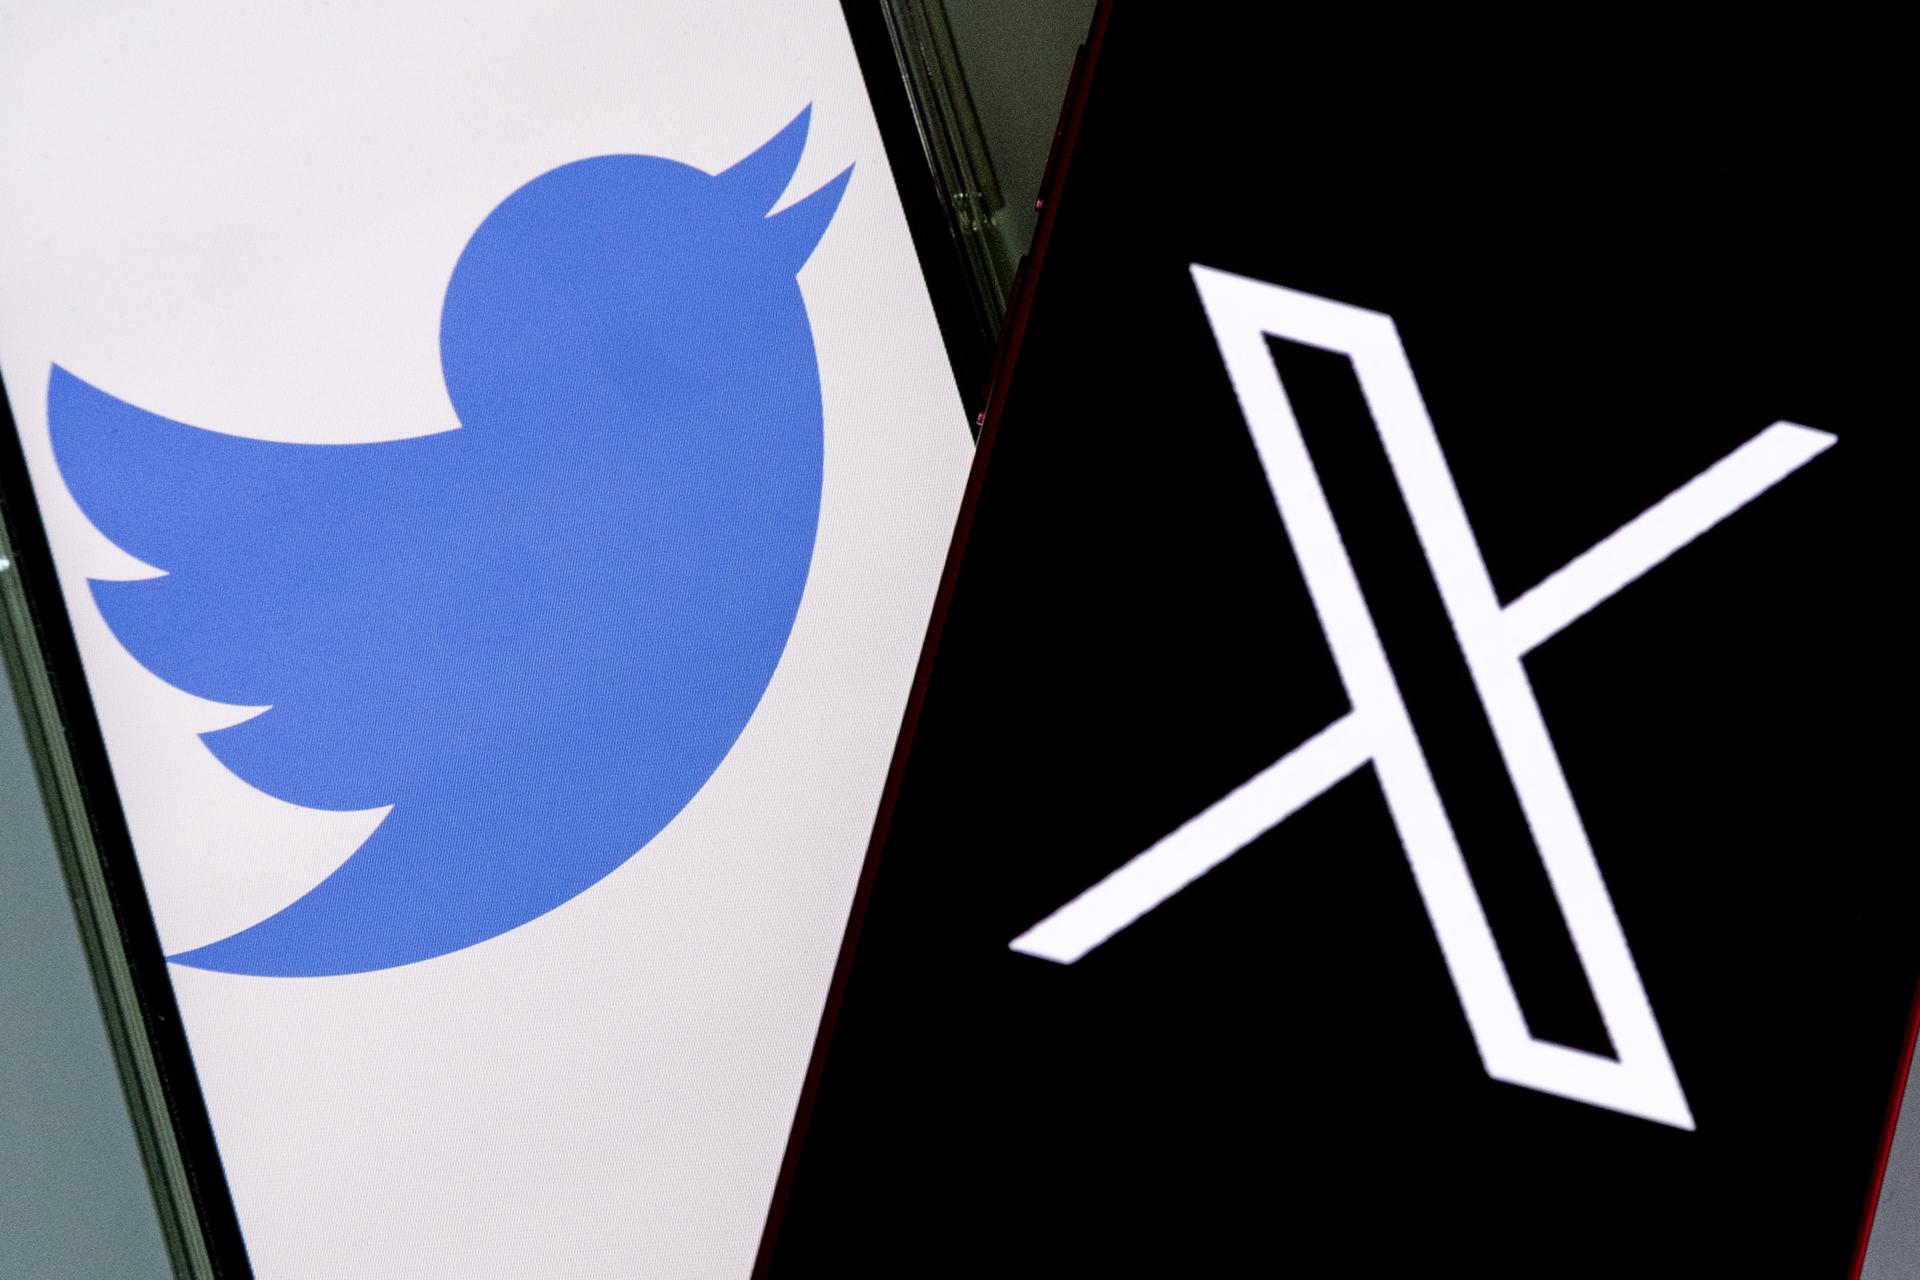 Vista de los logos de Twitter (i) y su nuevo nombre "X" (d), en las pantallas de teléfonos móviles, el 27 de julio de 2023. EFE/Etienne Laurent